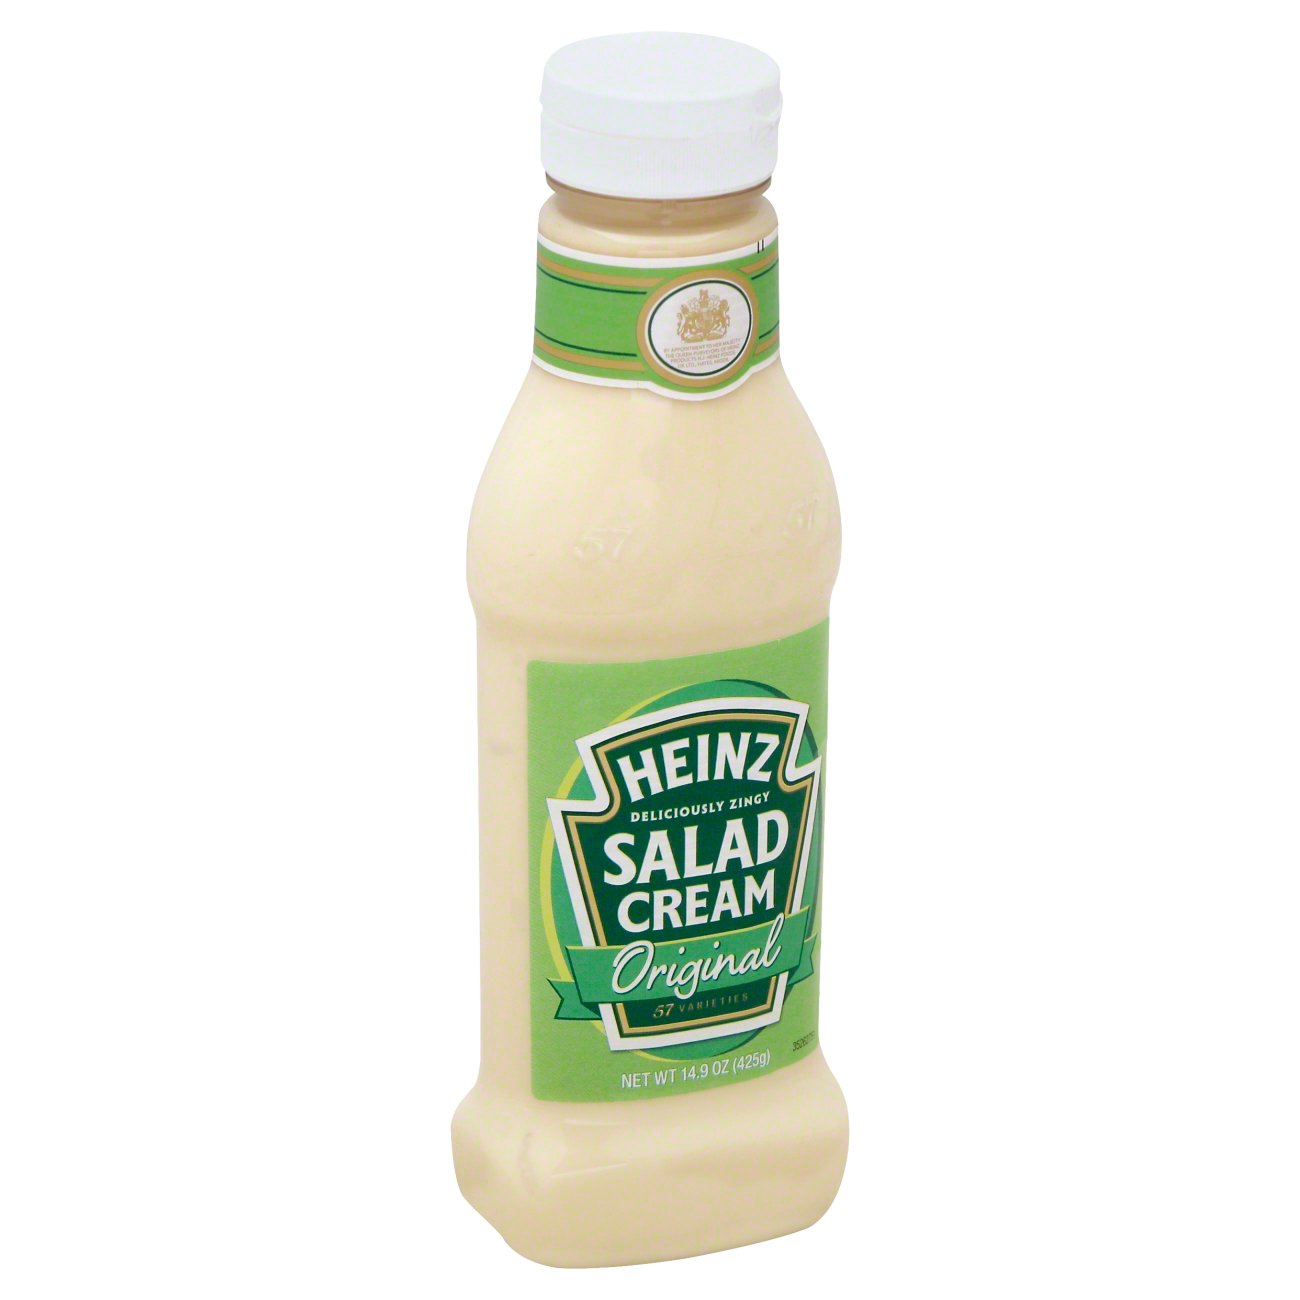 Heinz Salad Cream Original Dressing - Shop Salad Dressings at H-E-B